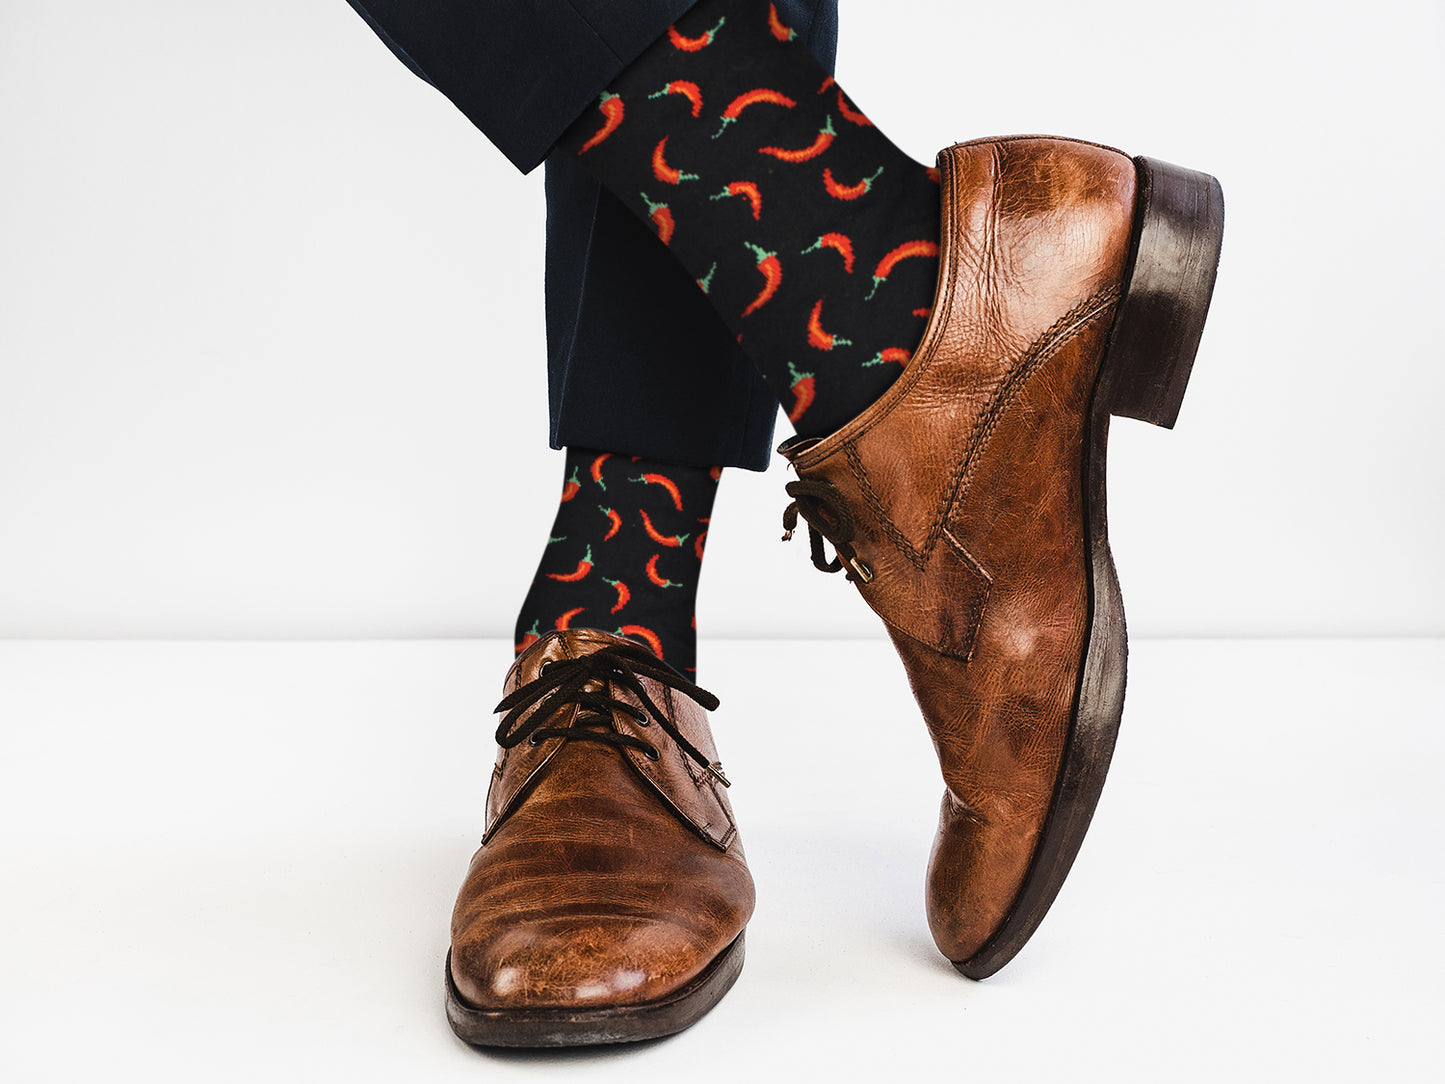 Sick Socks - Chili / Pepper – International Food Dress Socks